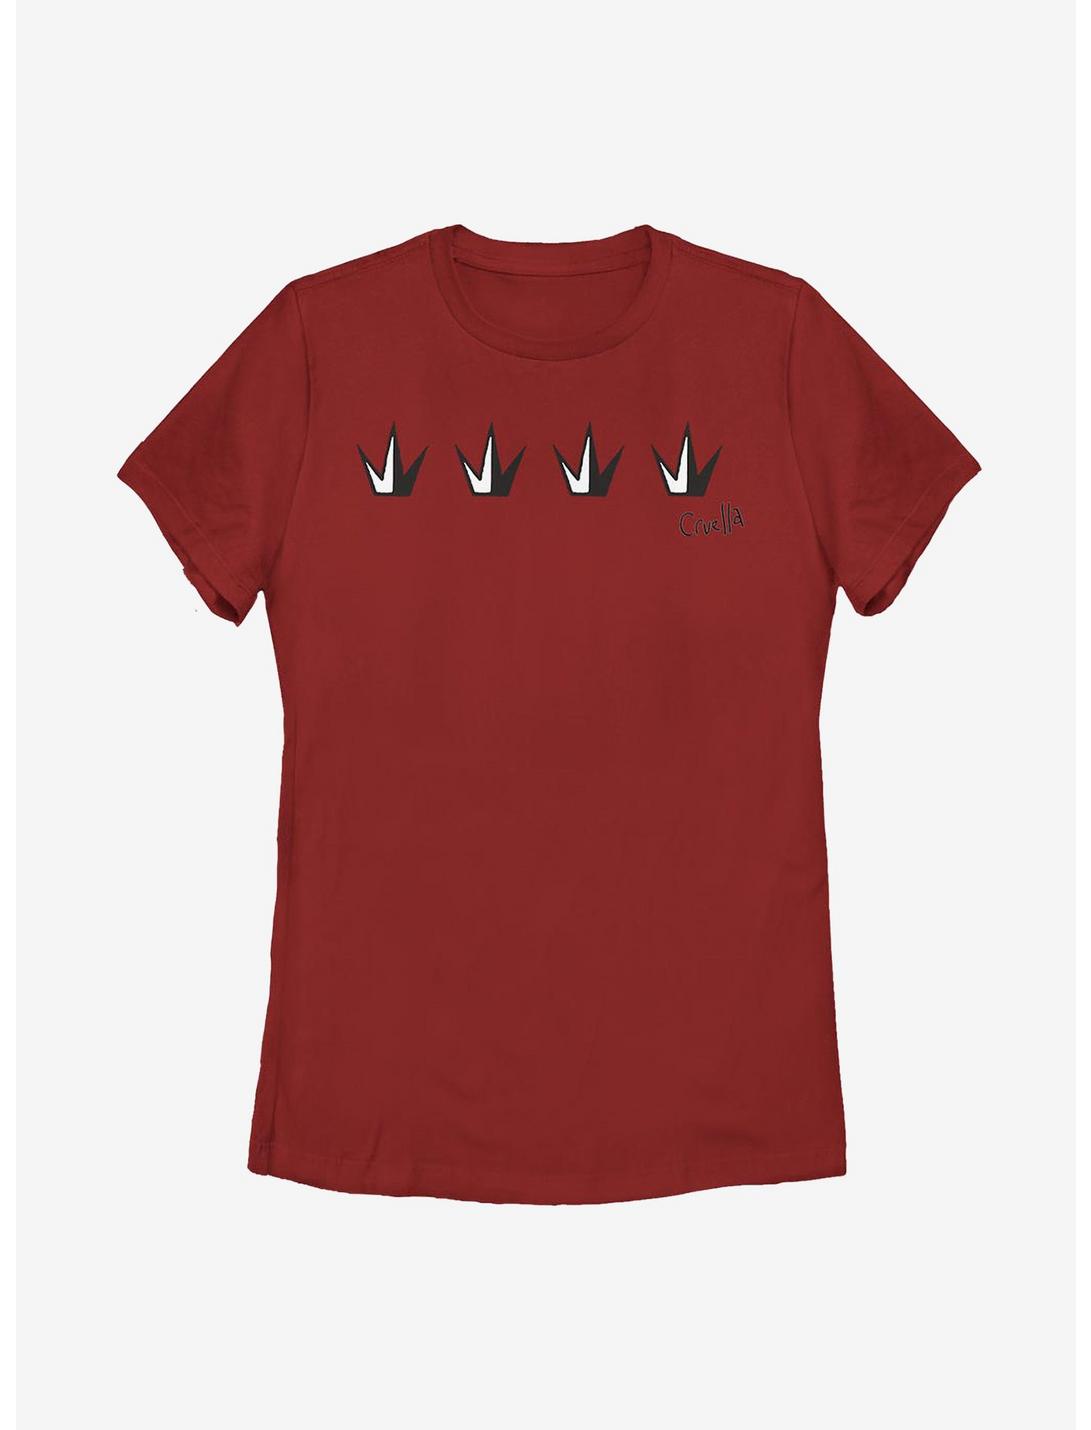 Disney Cruella Crowns Womens T-Shirt, RED, hi-res